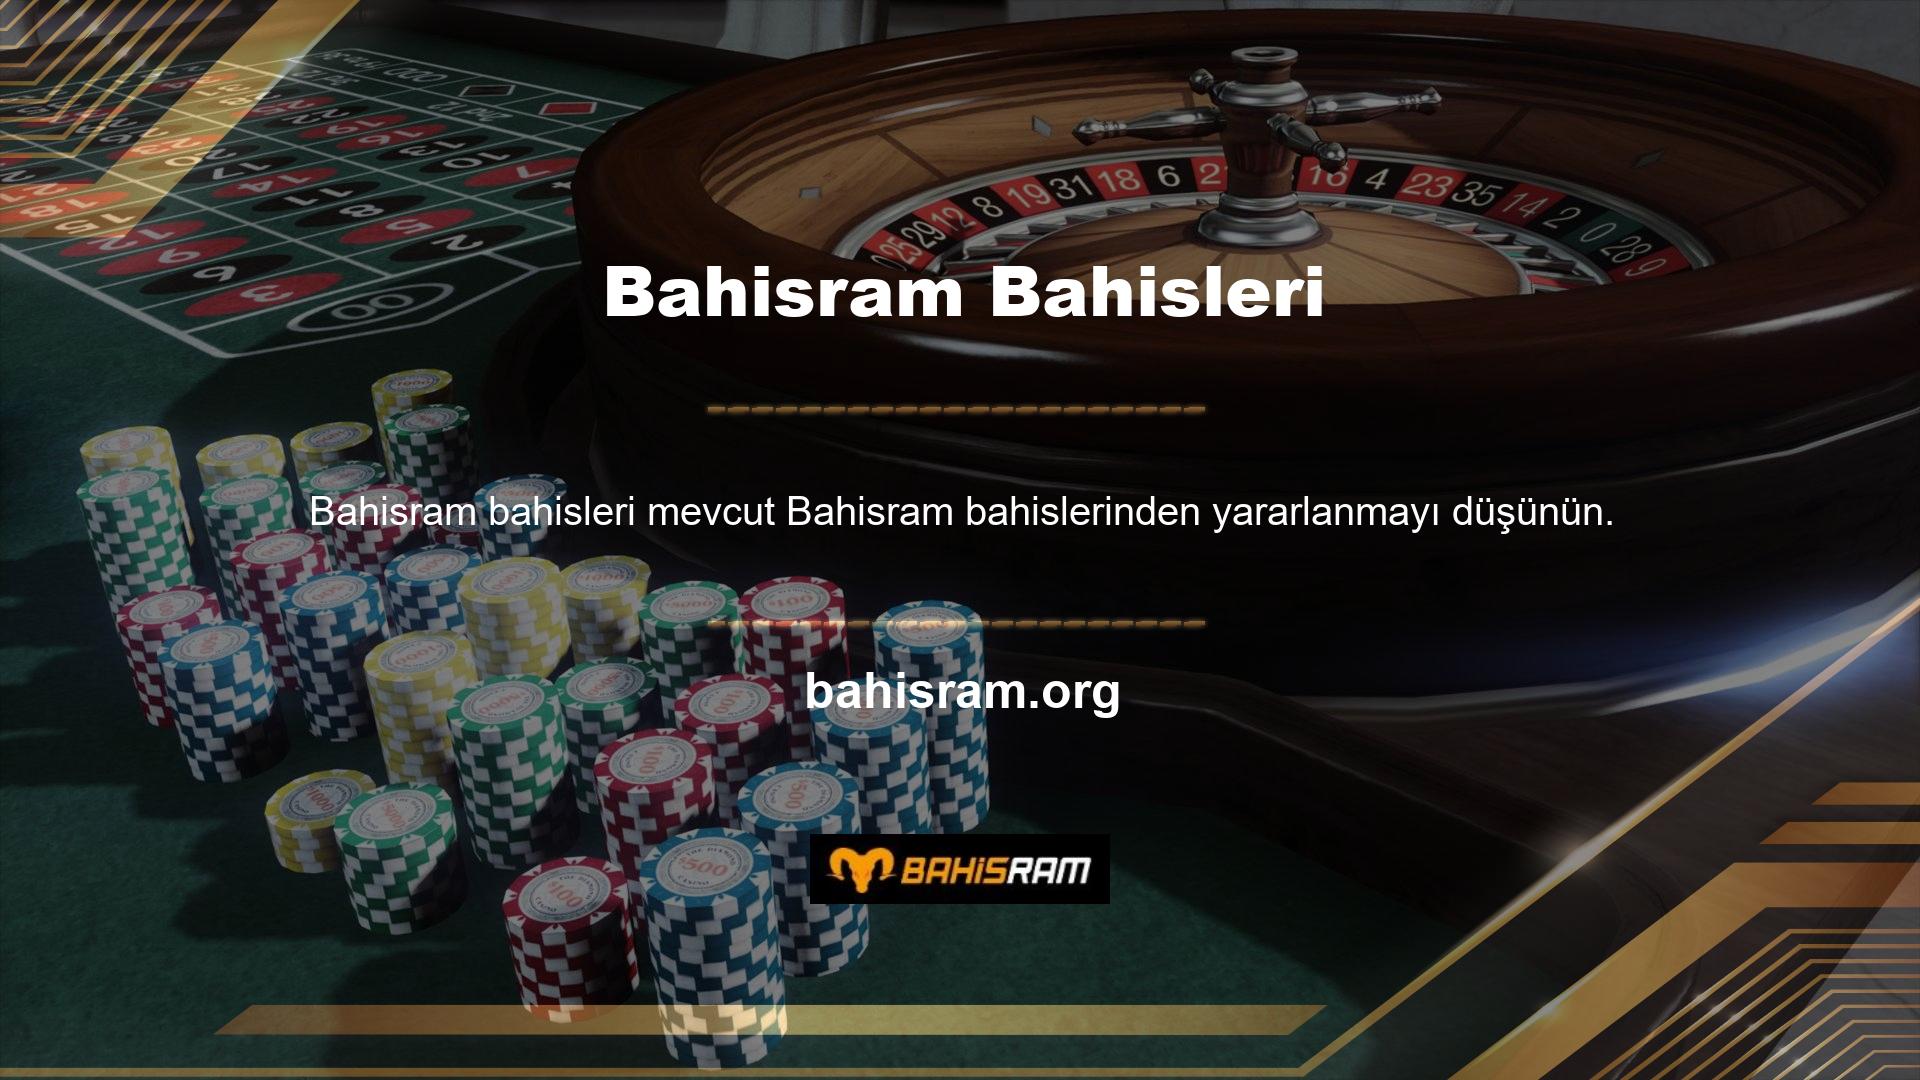 Aslında Bahisram ile olan bu etkileşimler kesintisiz gelir sağlamakta ve çevrimiçi casino için mükemmel ortamı yaratmaktadır